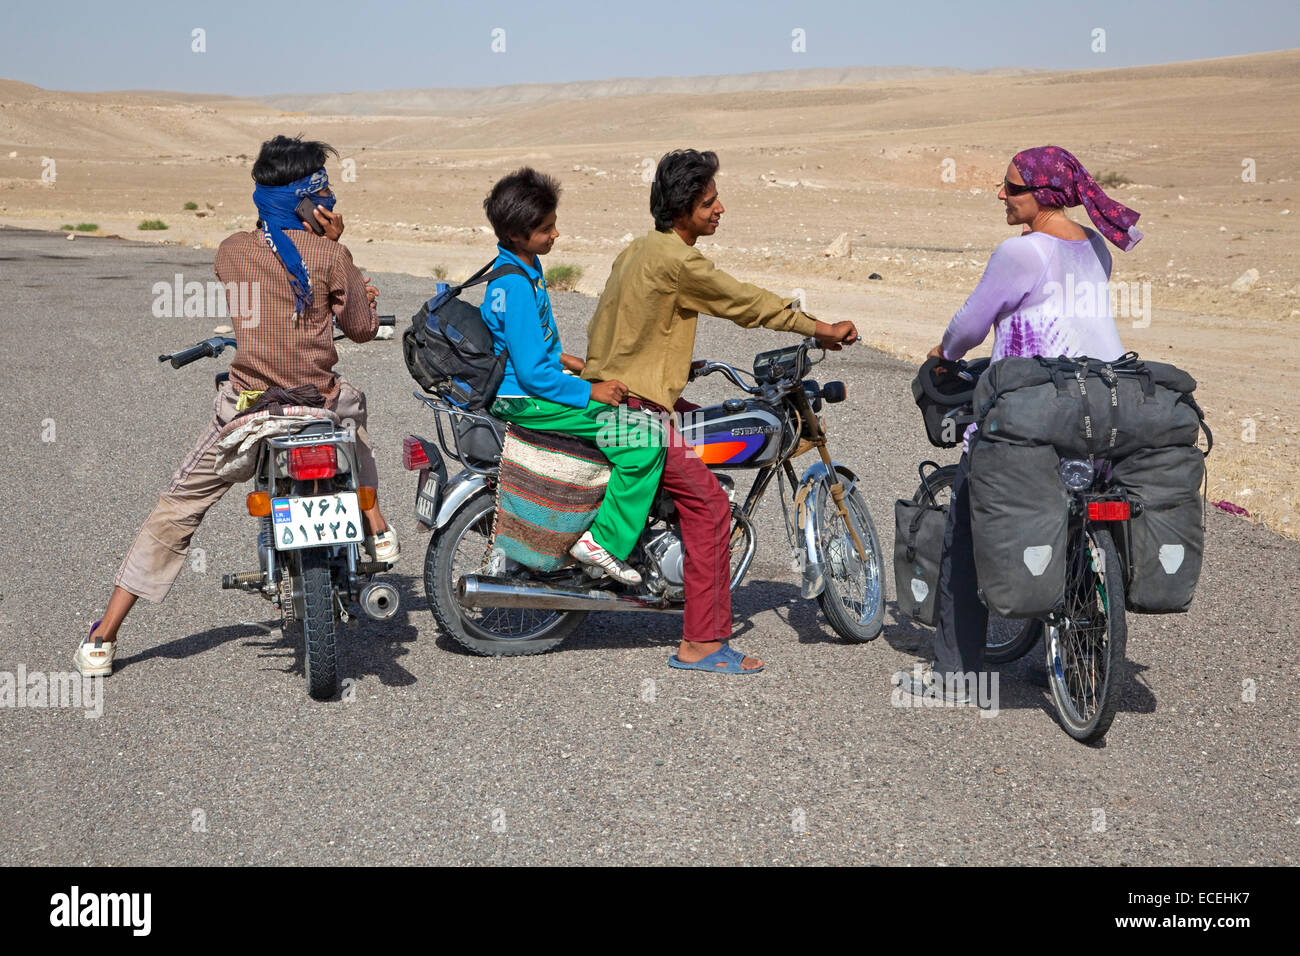 Los niños iraníes en motos hablando a las mujeres viajar ciclista en Irán occidental, cerca de la frontera de Turkmenistán en el desierto de Karakum Foto de stock